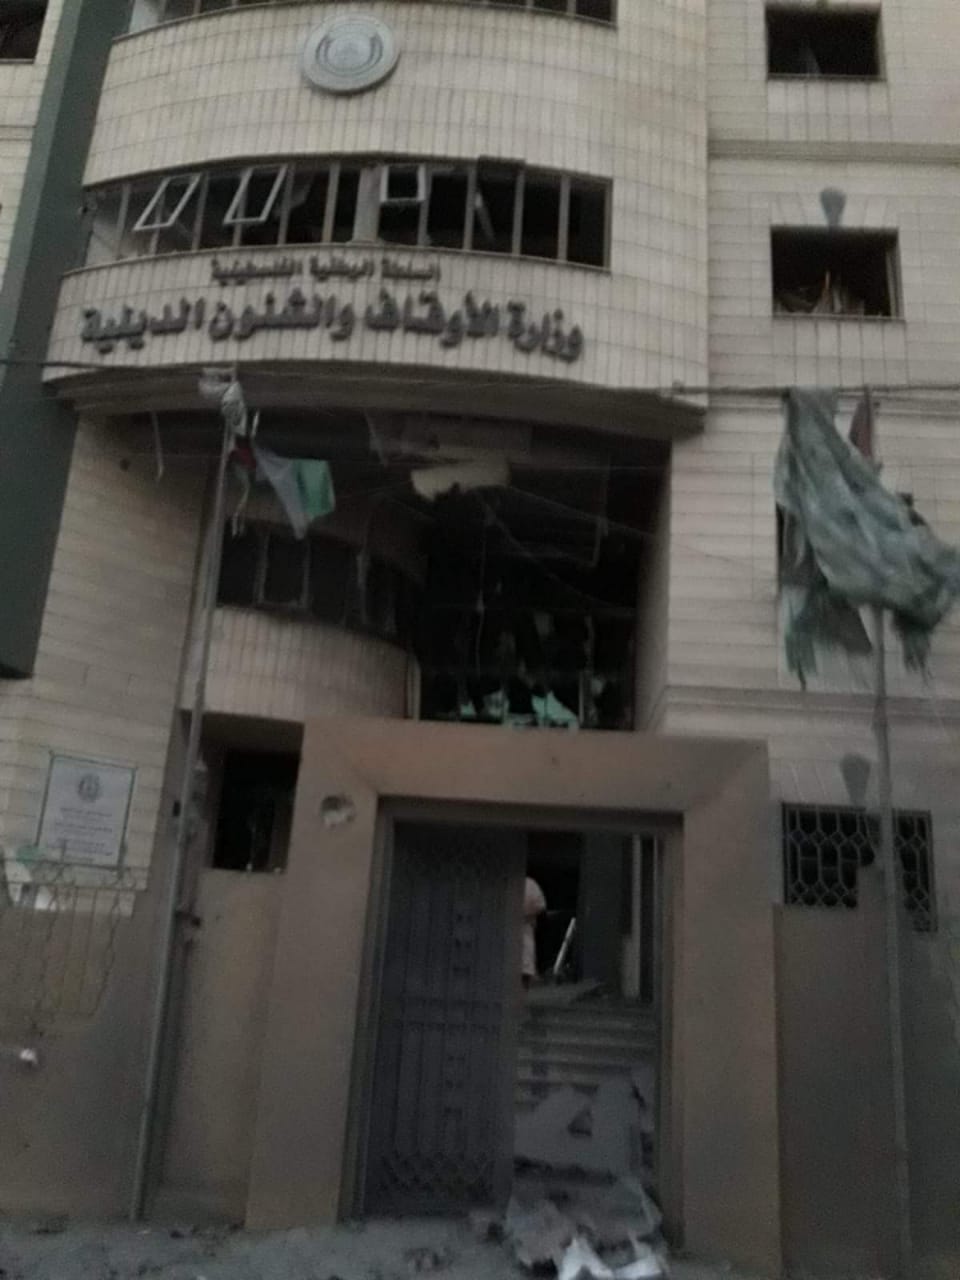 وجهه وزارة الأوقاف بعد التفجير